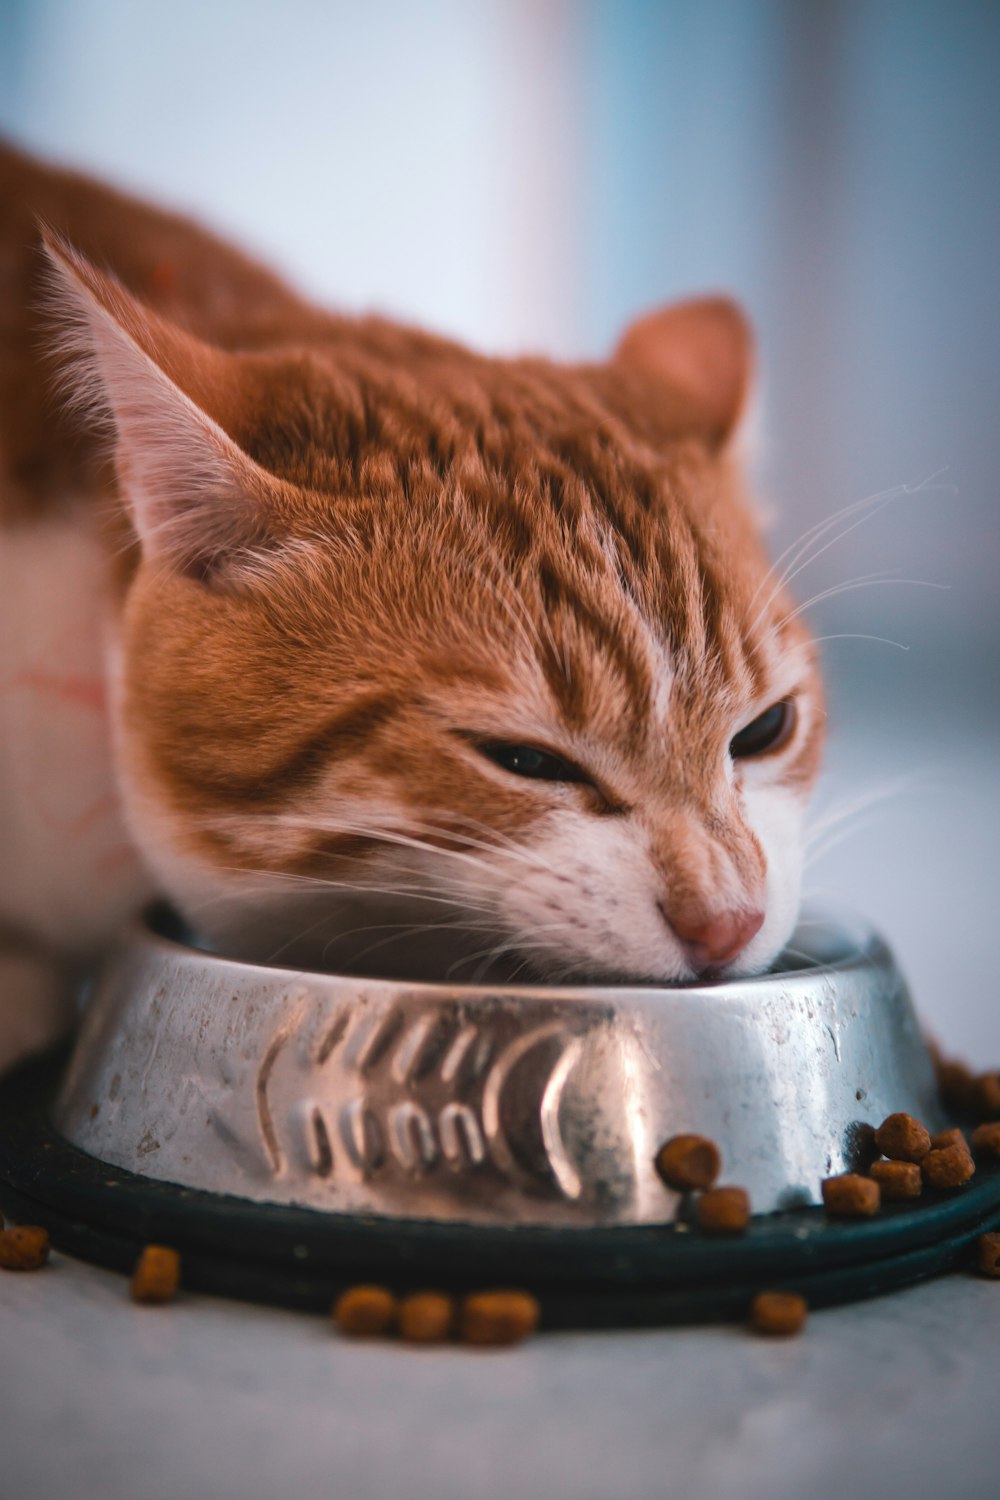 cat eating cat food in pet bowl